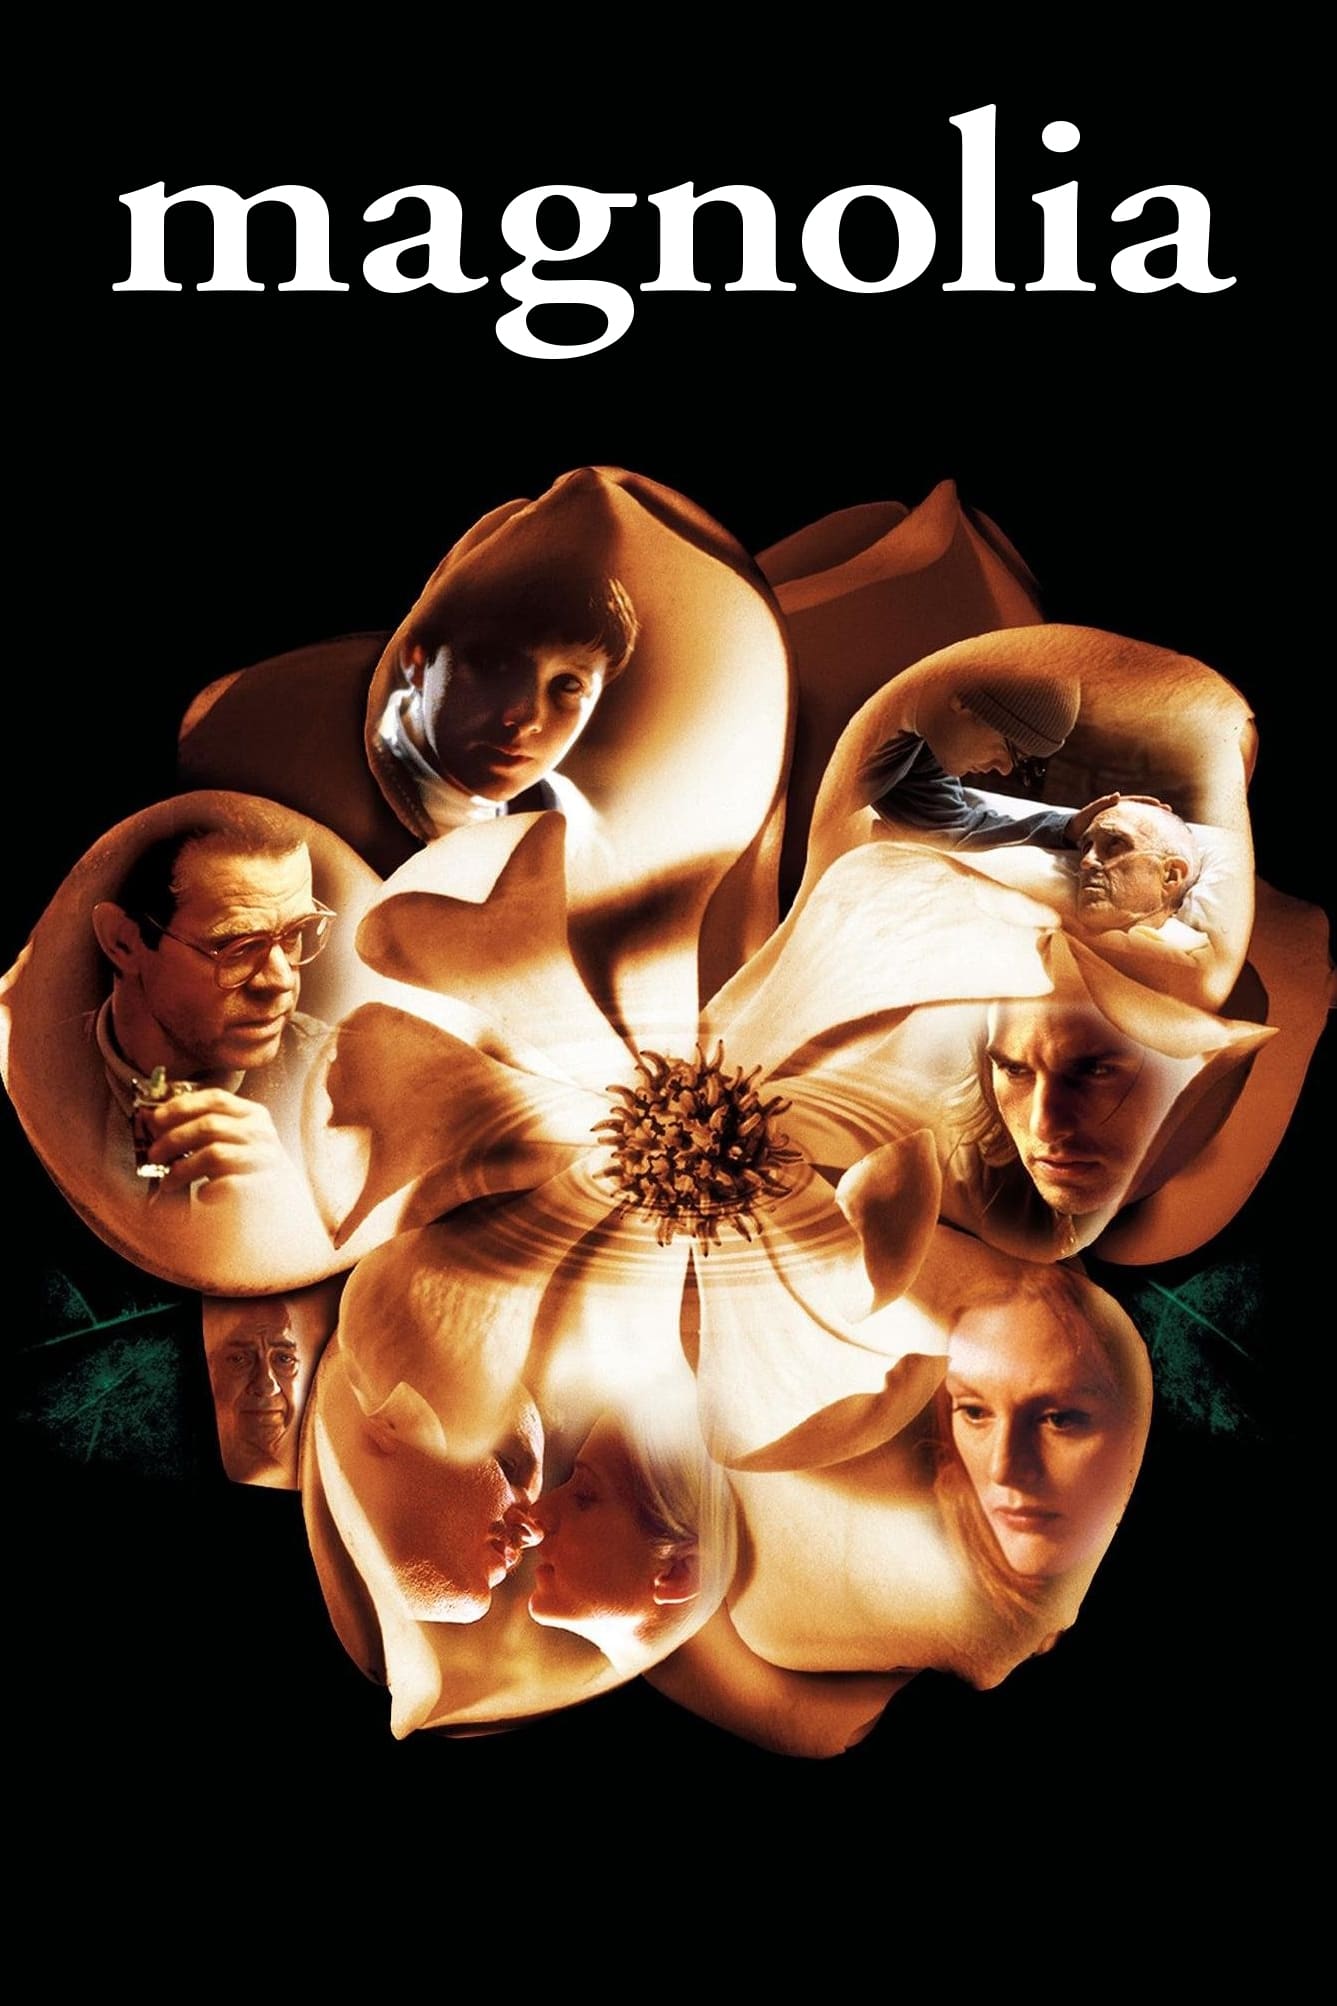 Hương Mộc Lan (Magnolia) [1999]